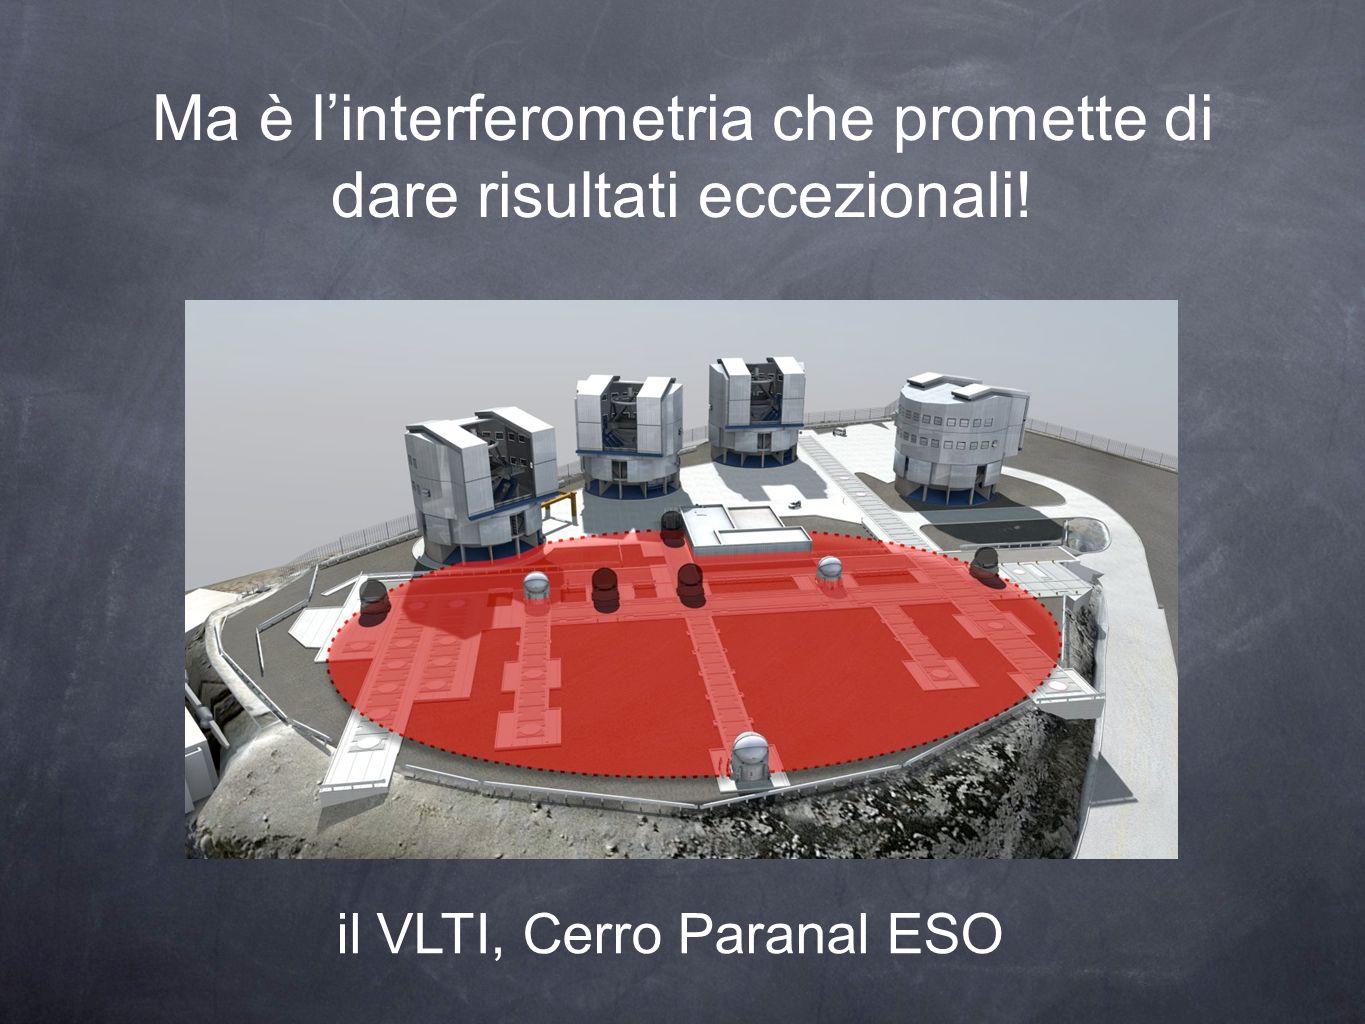 Ma è linterferometria che promette di dare risultati eccezionali! il VLTI, Cerro Paranal ESO